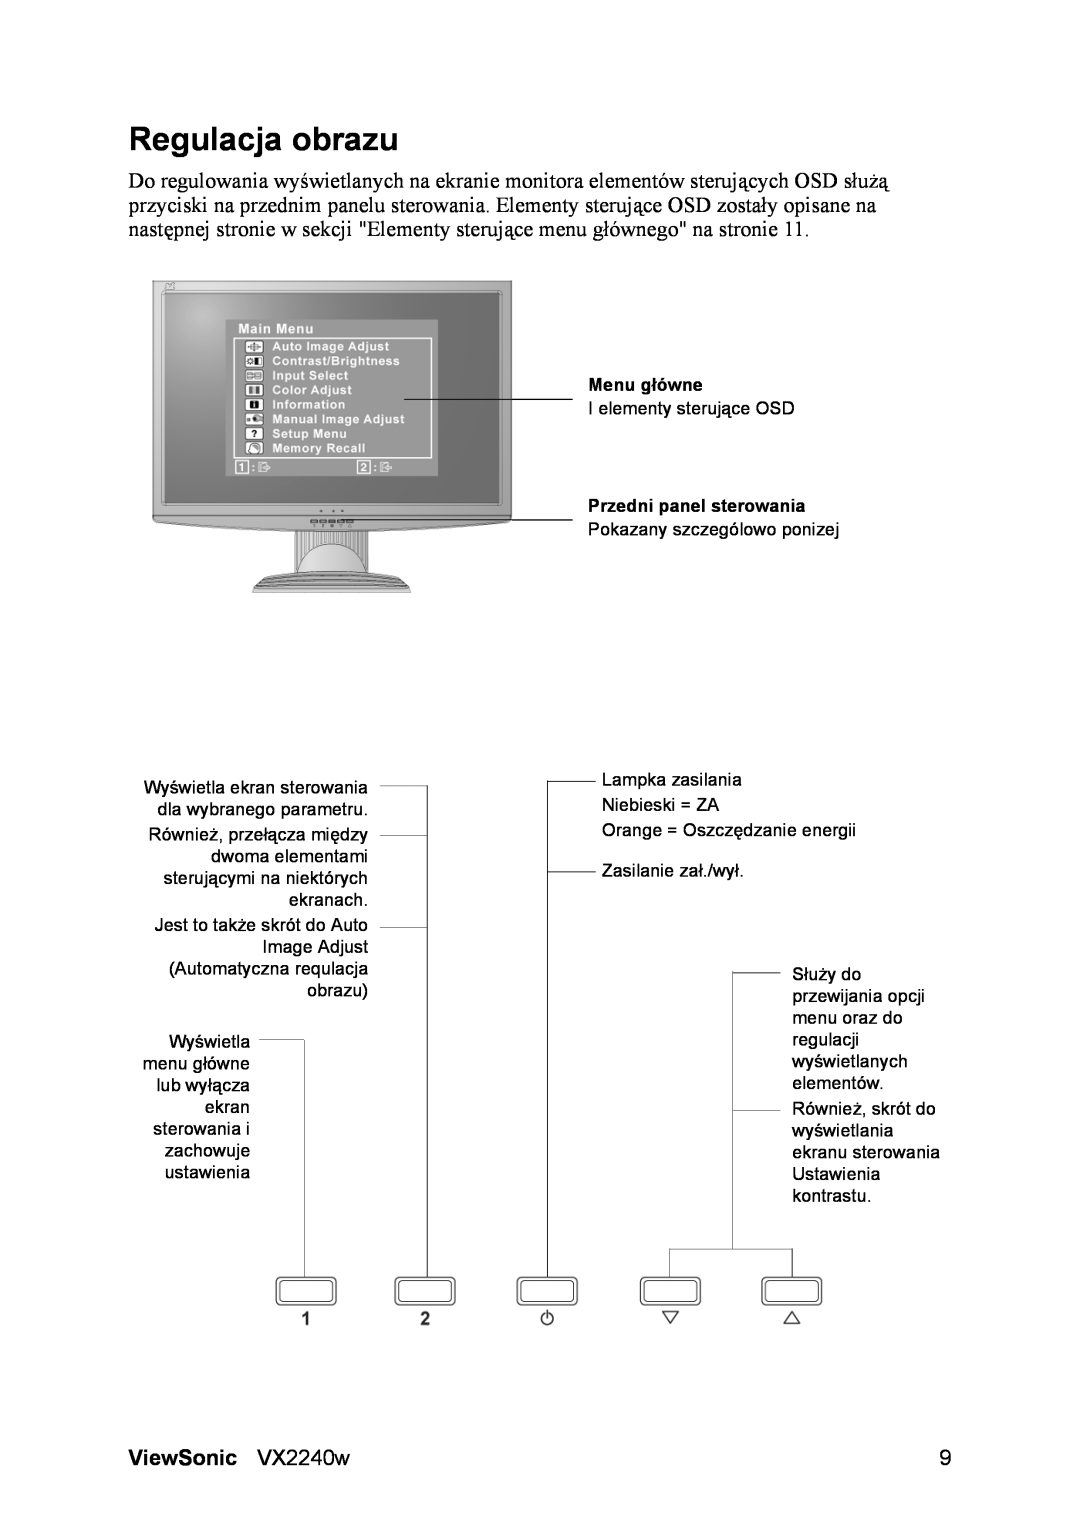 ViewSonic VS11985 manual Regulacja obrazu, ViewSonic VX2240w, Menu główne, Przedni panel sterowania 